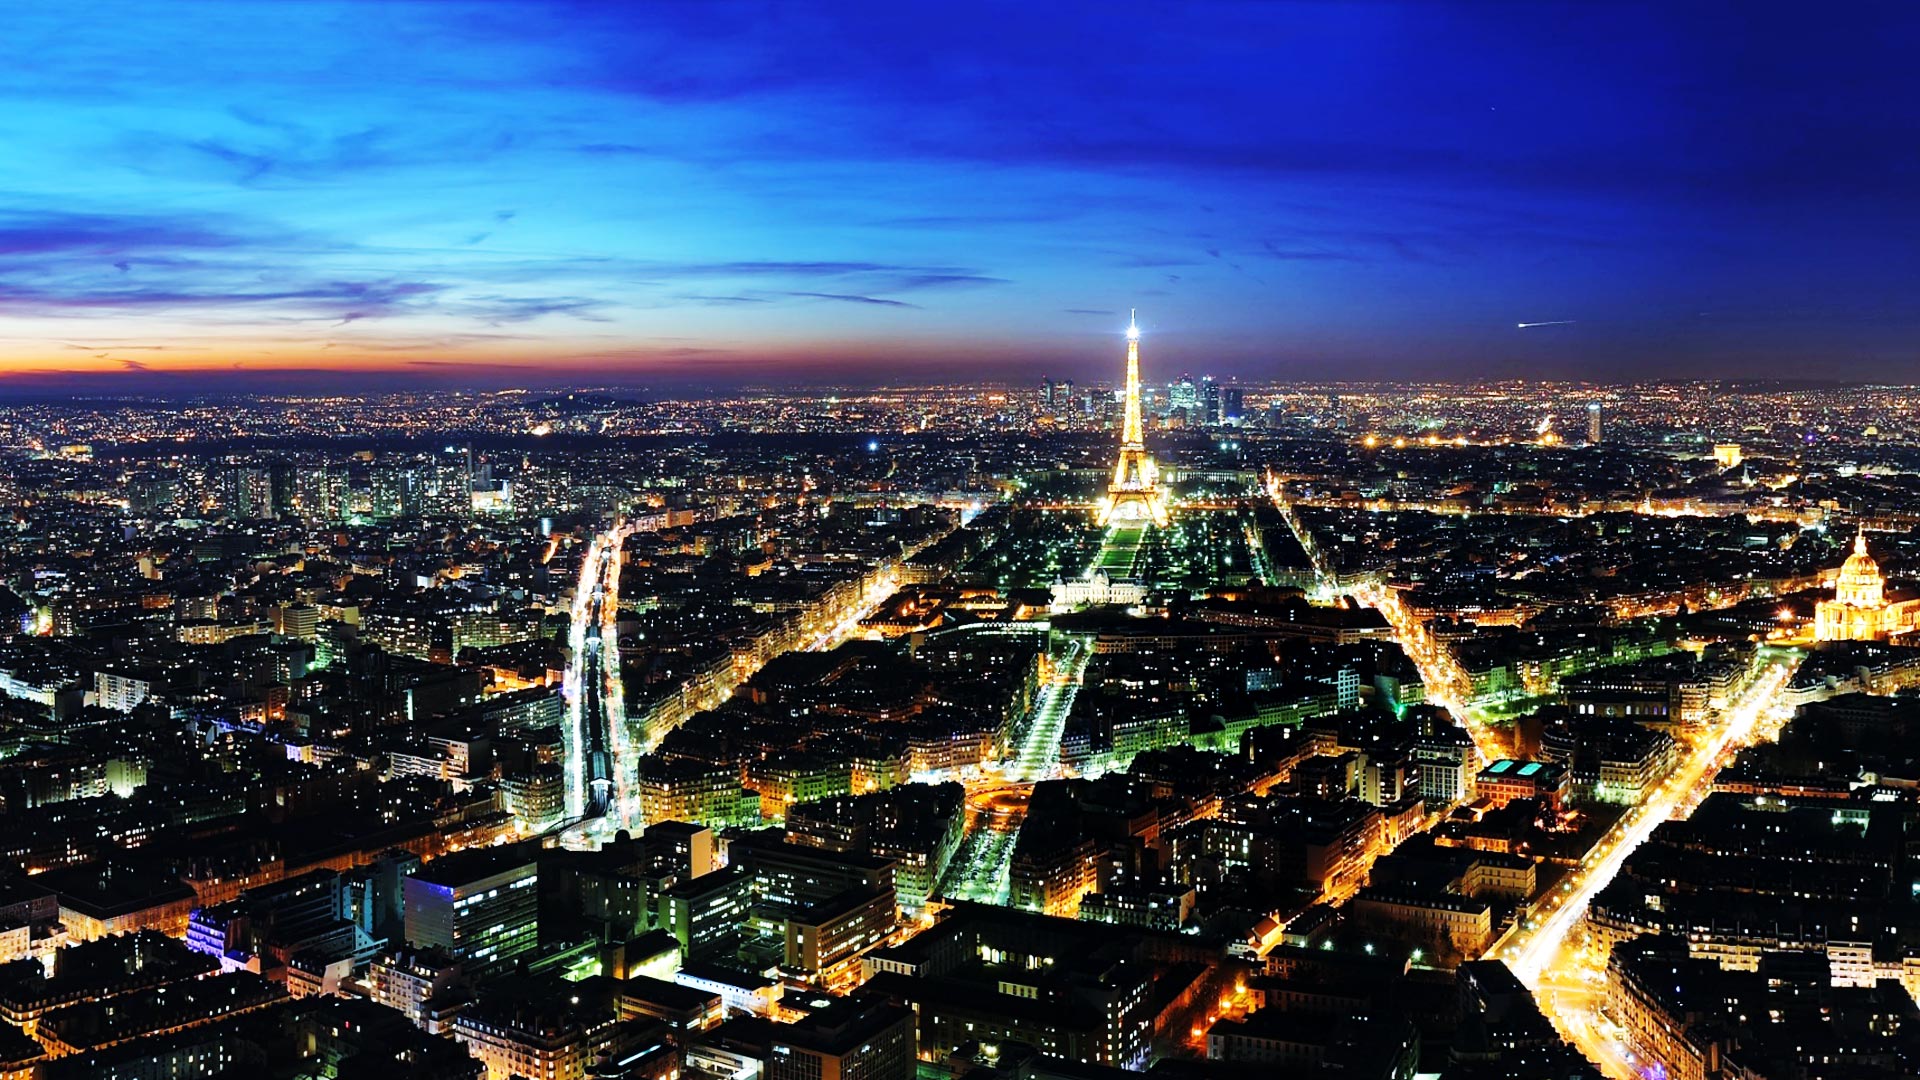 フルhdデスクトップ壁紙 パリの夜景 壁紙 Pc 19 1080 きれいな夜景の壁紙 フルｈｄ Naver まとめ